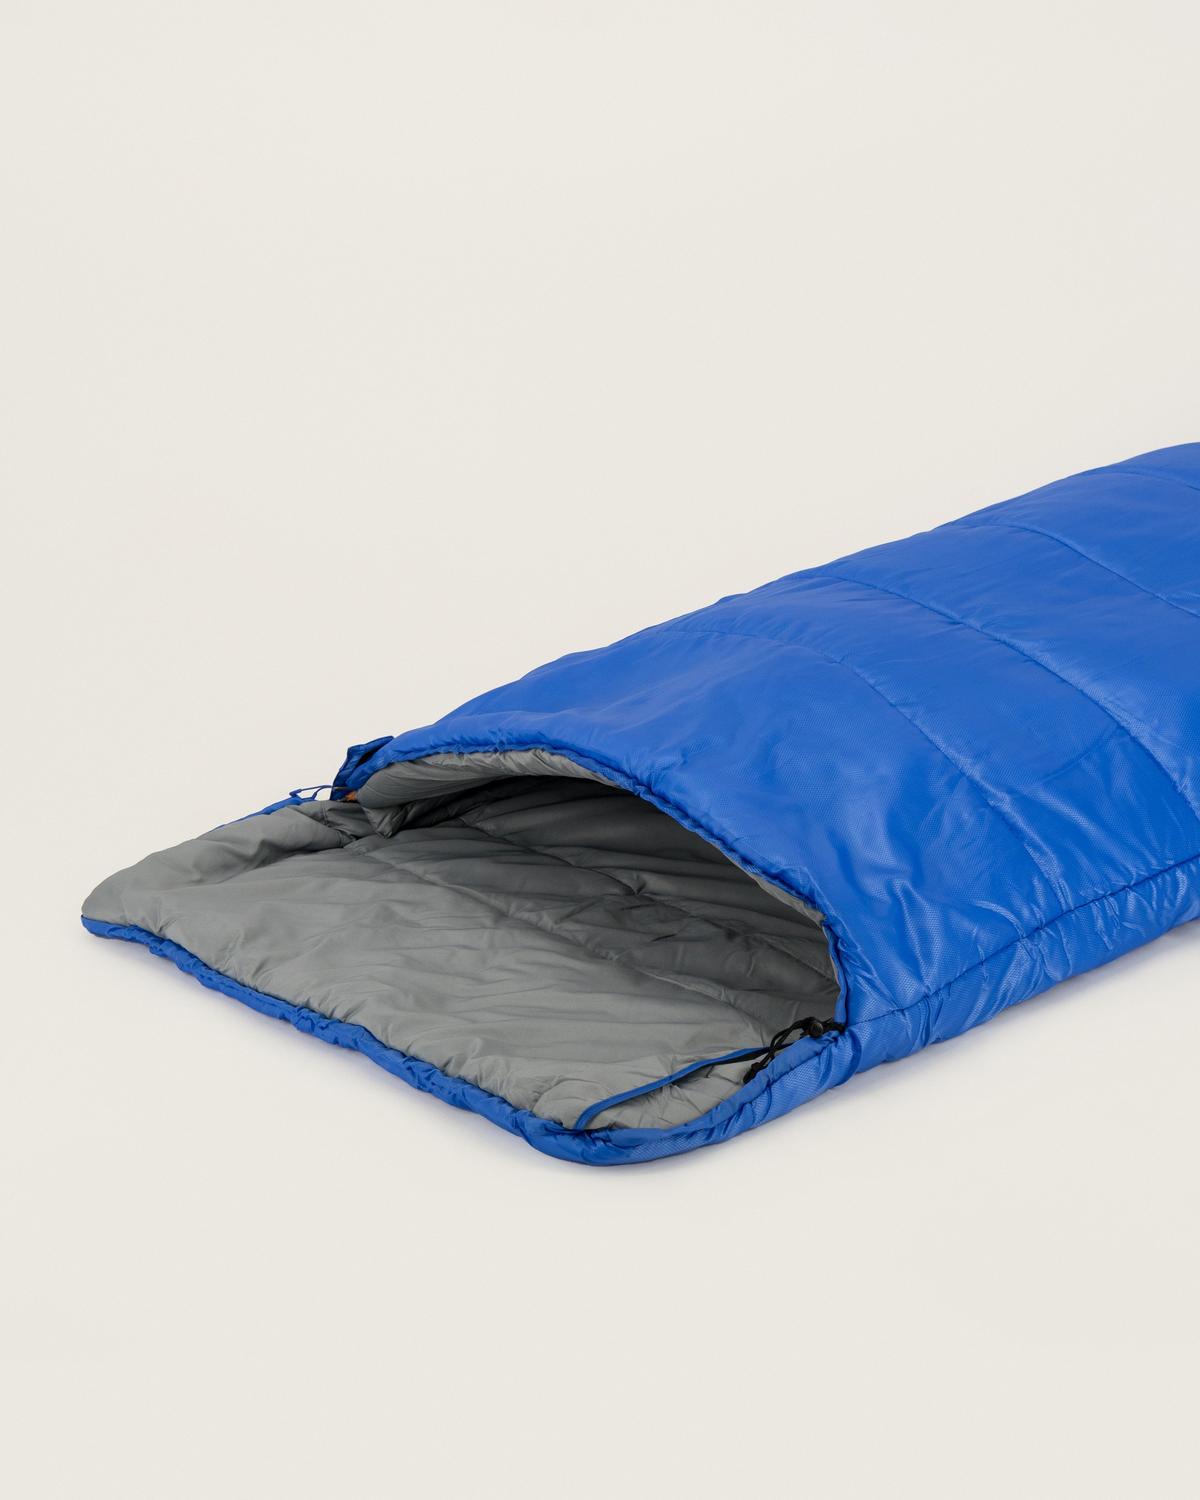 K-Way Traverse 2 Sleeping Bag -  Charcoal/Royal